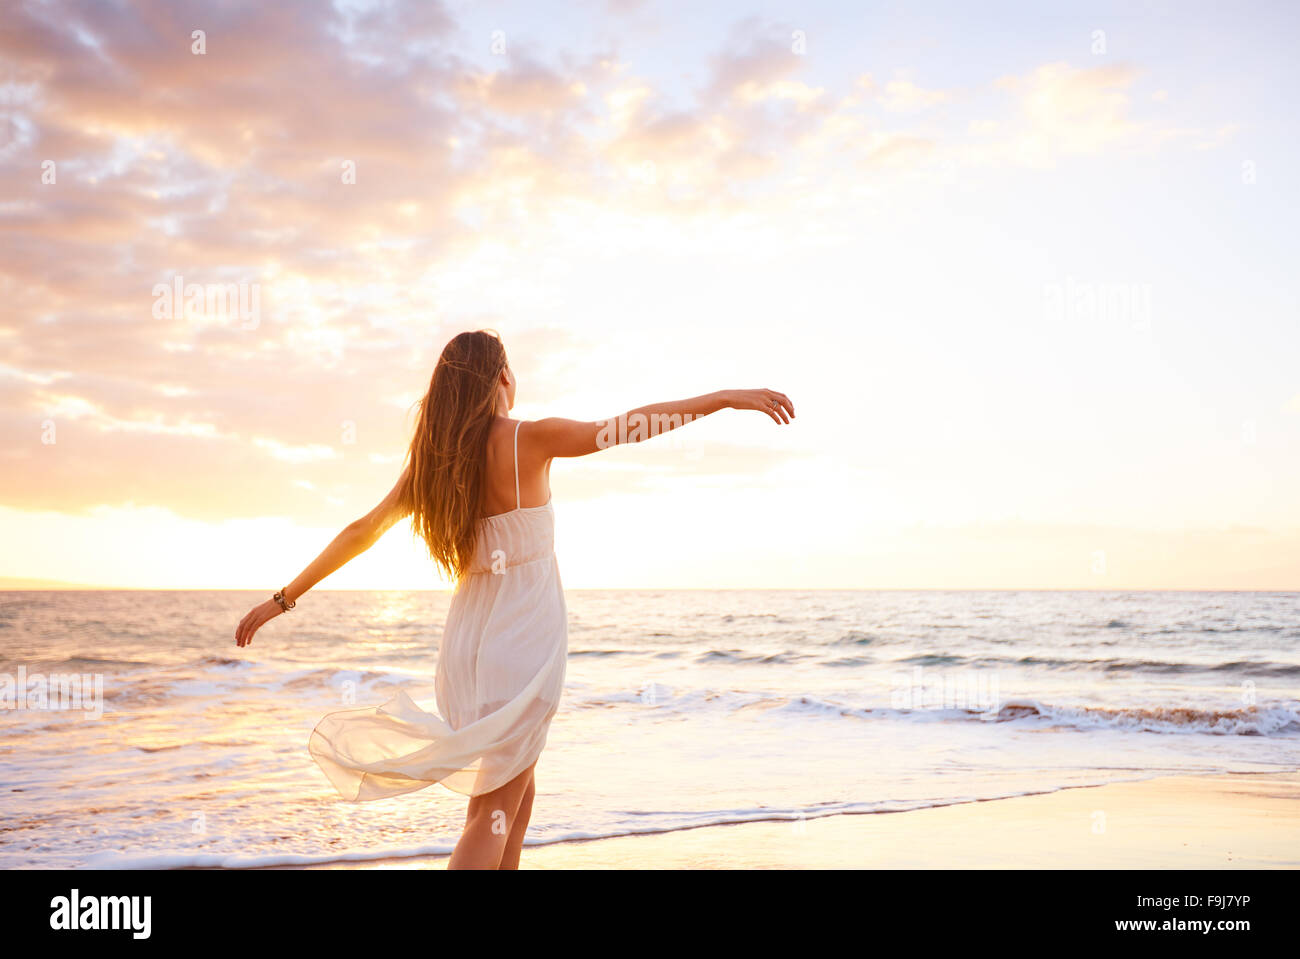 Fröhliche unbeschwerte Frau tanzen bei Sonnenuntergang am Strand. Glücklich kostenlose Lifestyle-Konzept. Stockfoto